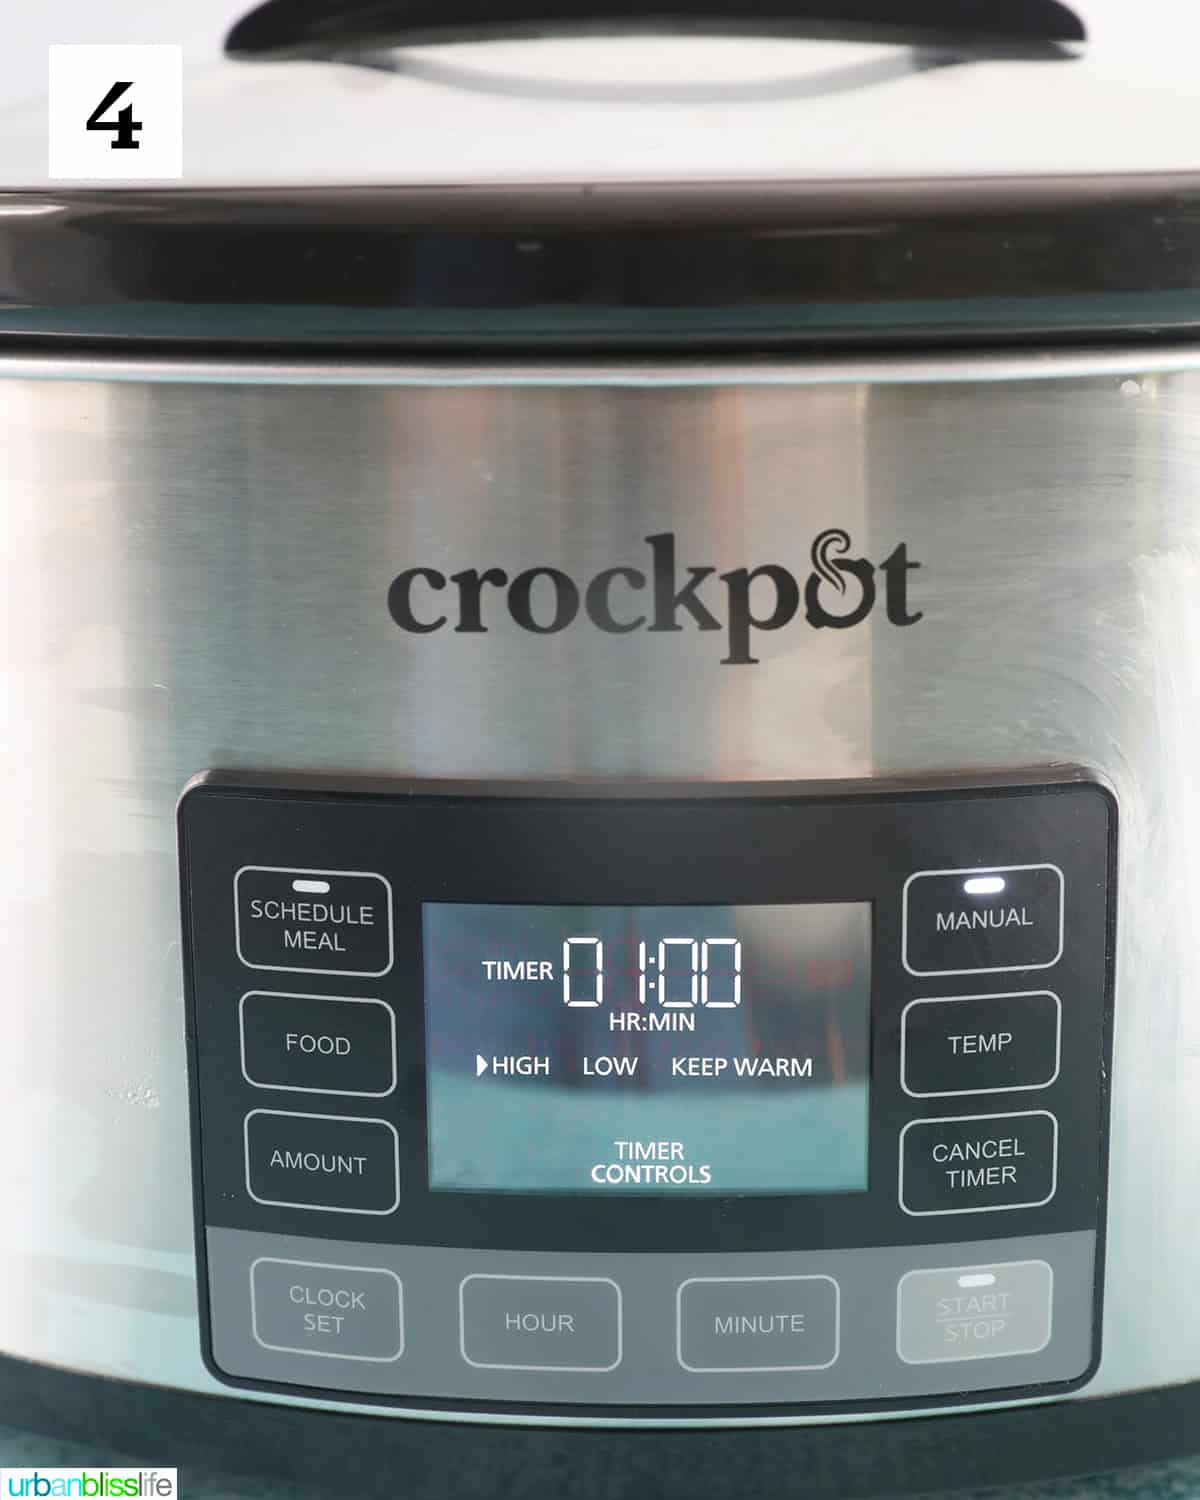 crockpot slow cooker set on high for 1 hour.